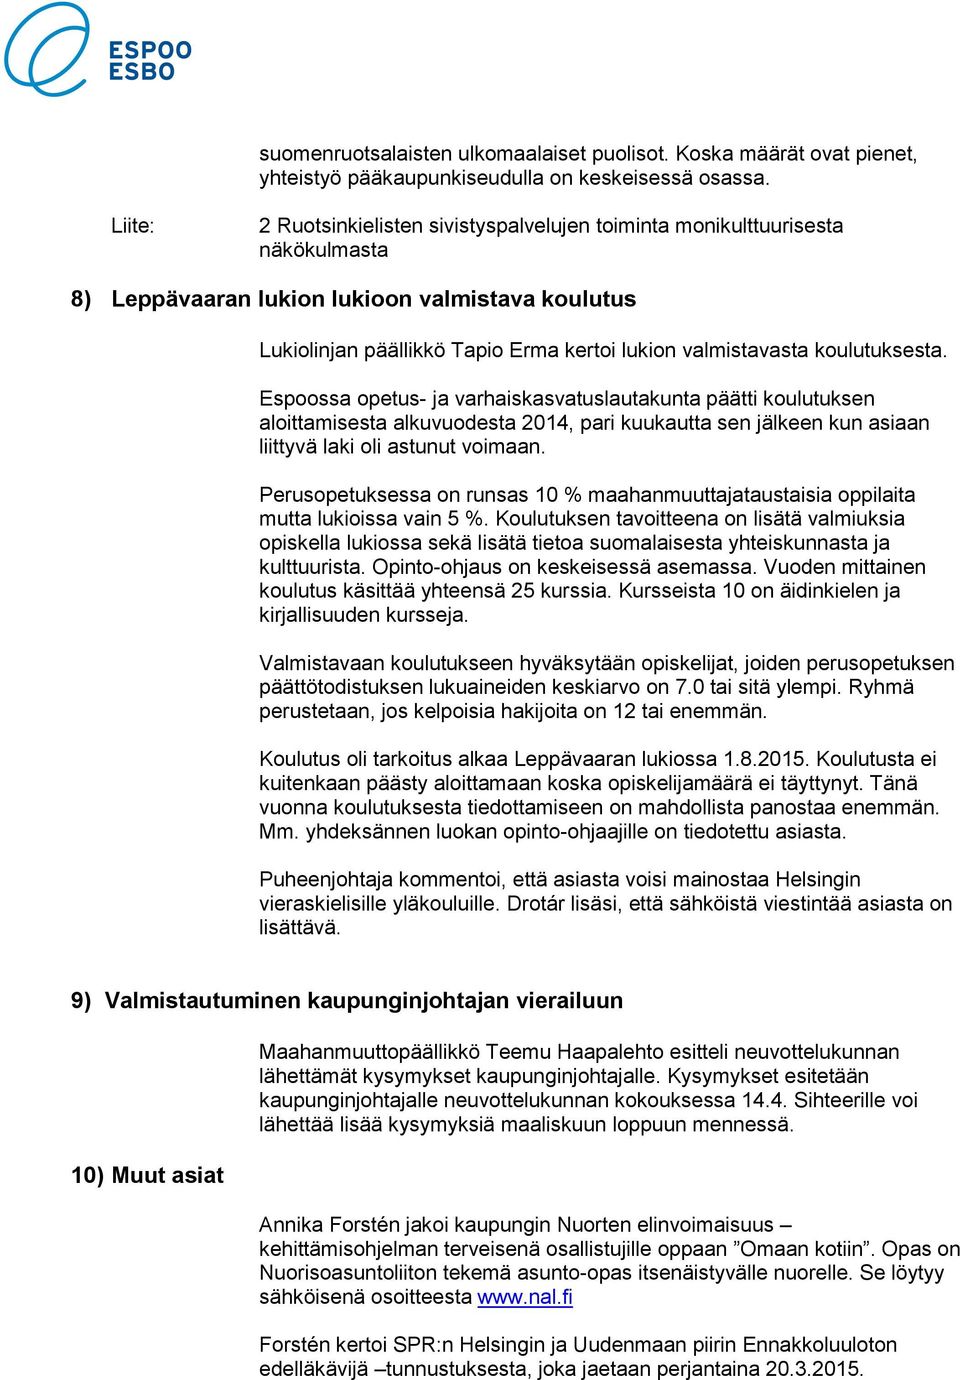 koulutuksesta. Espoossa opetus- ja varhaiskasvatuslautakunta päätti koulutuksen aloittamisesta alkuvuodesta 2014, pari kuukautta sen jälkeen kun asiaan liittyvä laki oli astunut voimaan.